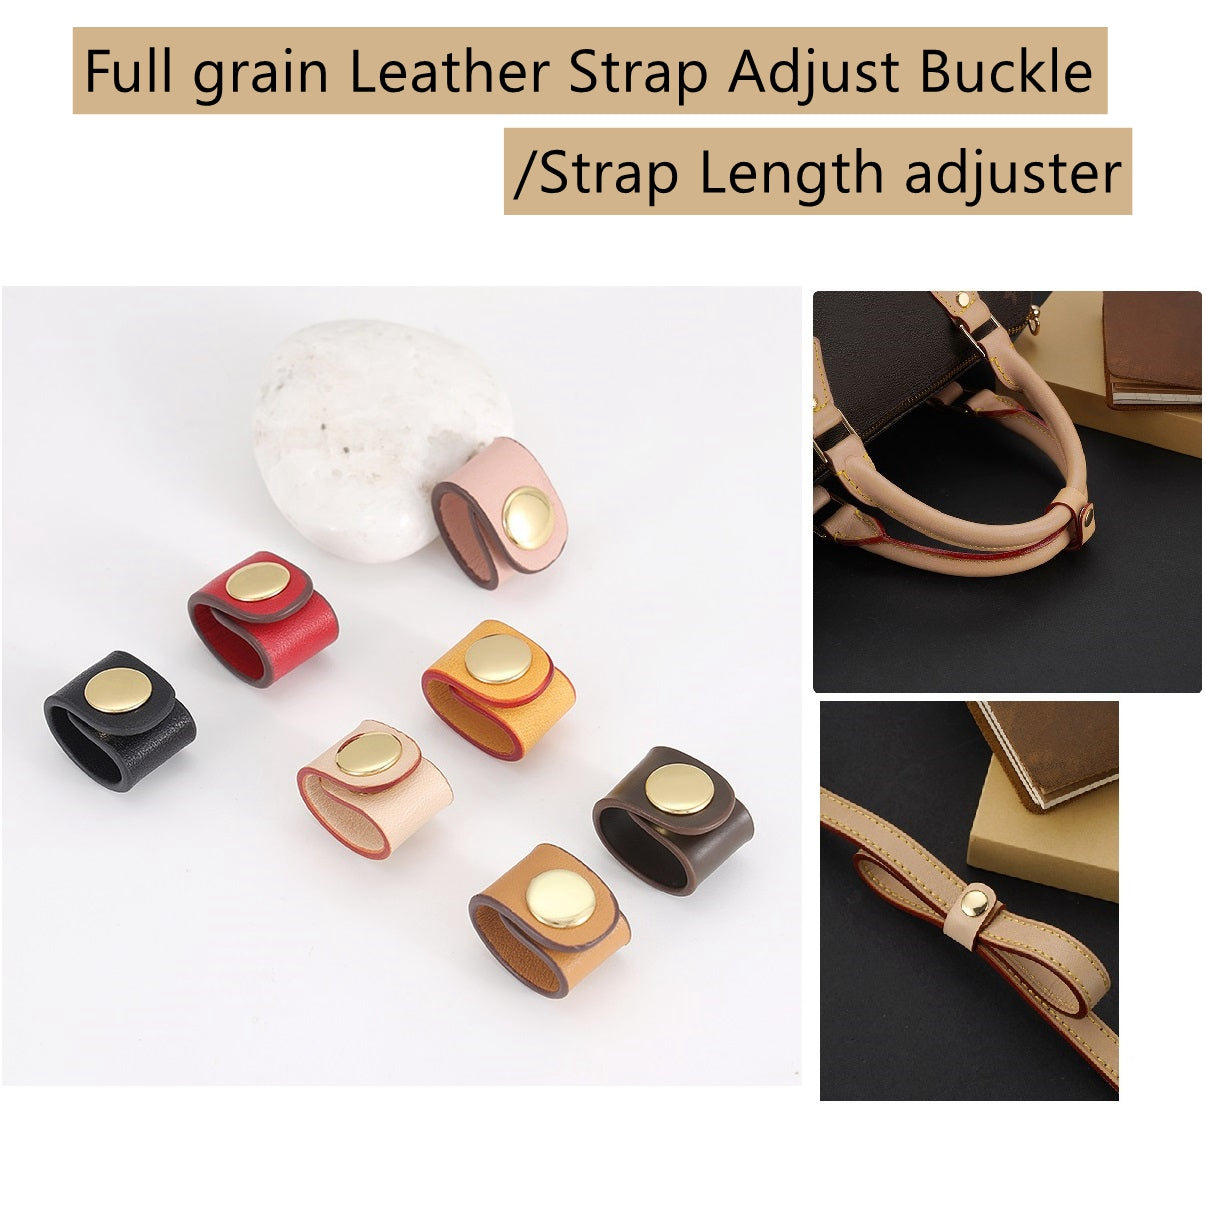 Leather Strap Adjust Buckle/Strap length adjuster